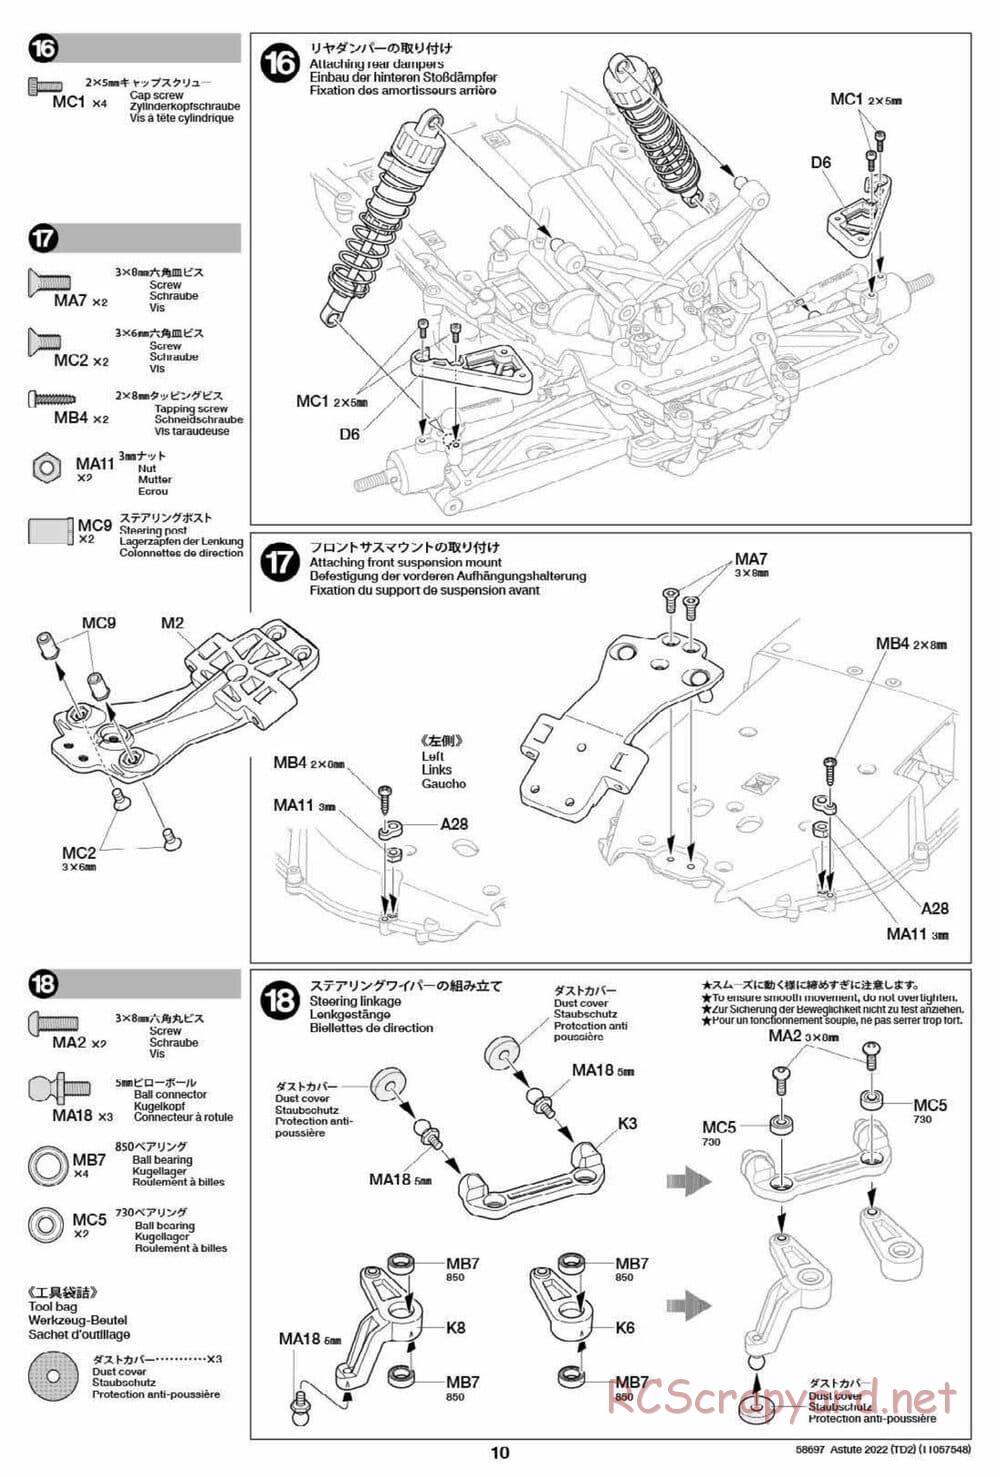 Tamiya - Astute 2022 - TD2 Chassis - Manual - Page 10